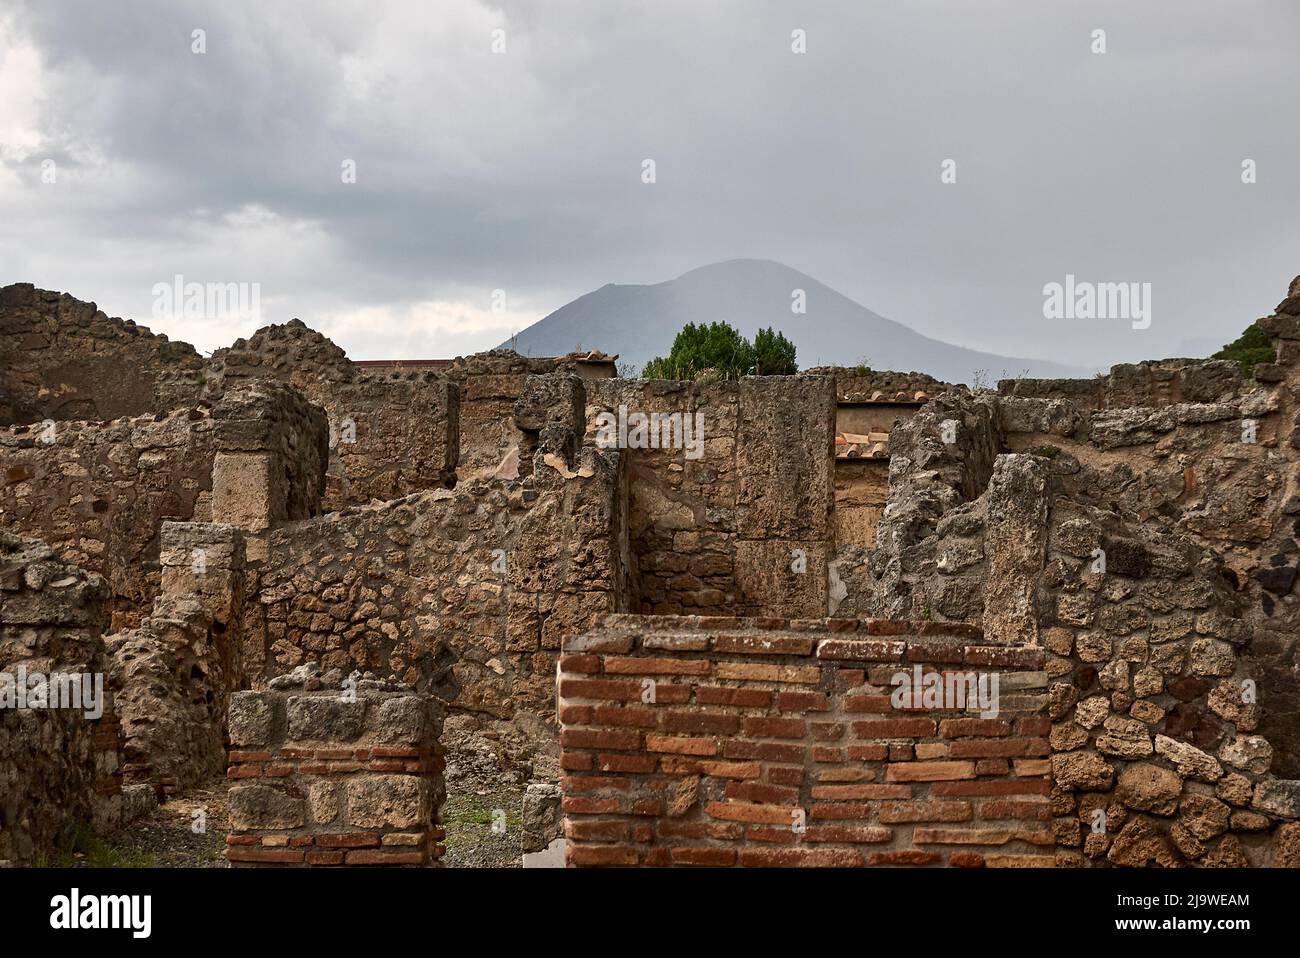 Ammira le rovine degli edifici di Pompei, patrimonio dell'umanità dell'UNESCO, verso il Vesuvio. Foto Stock